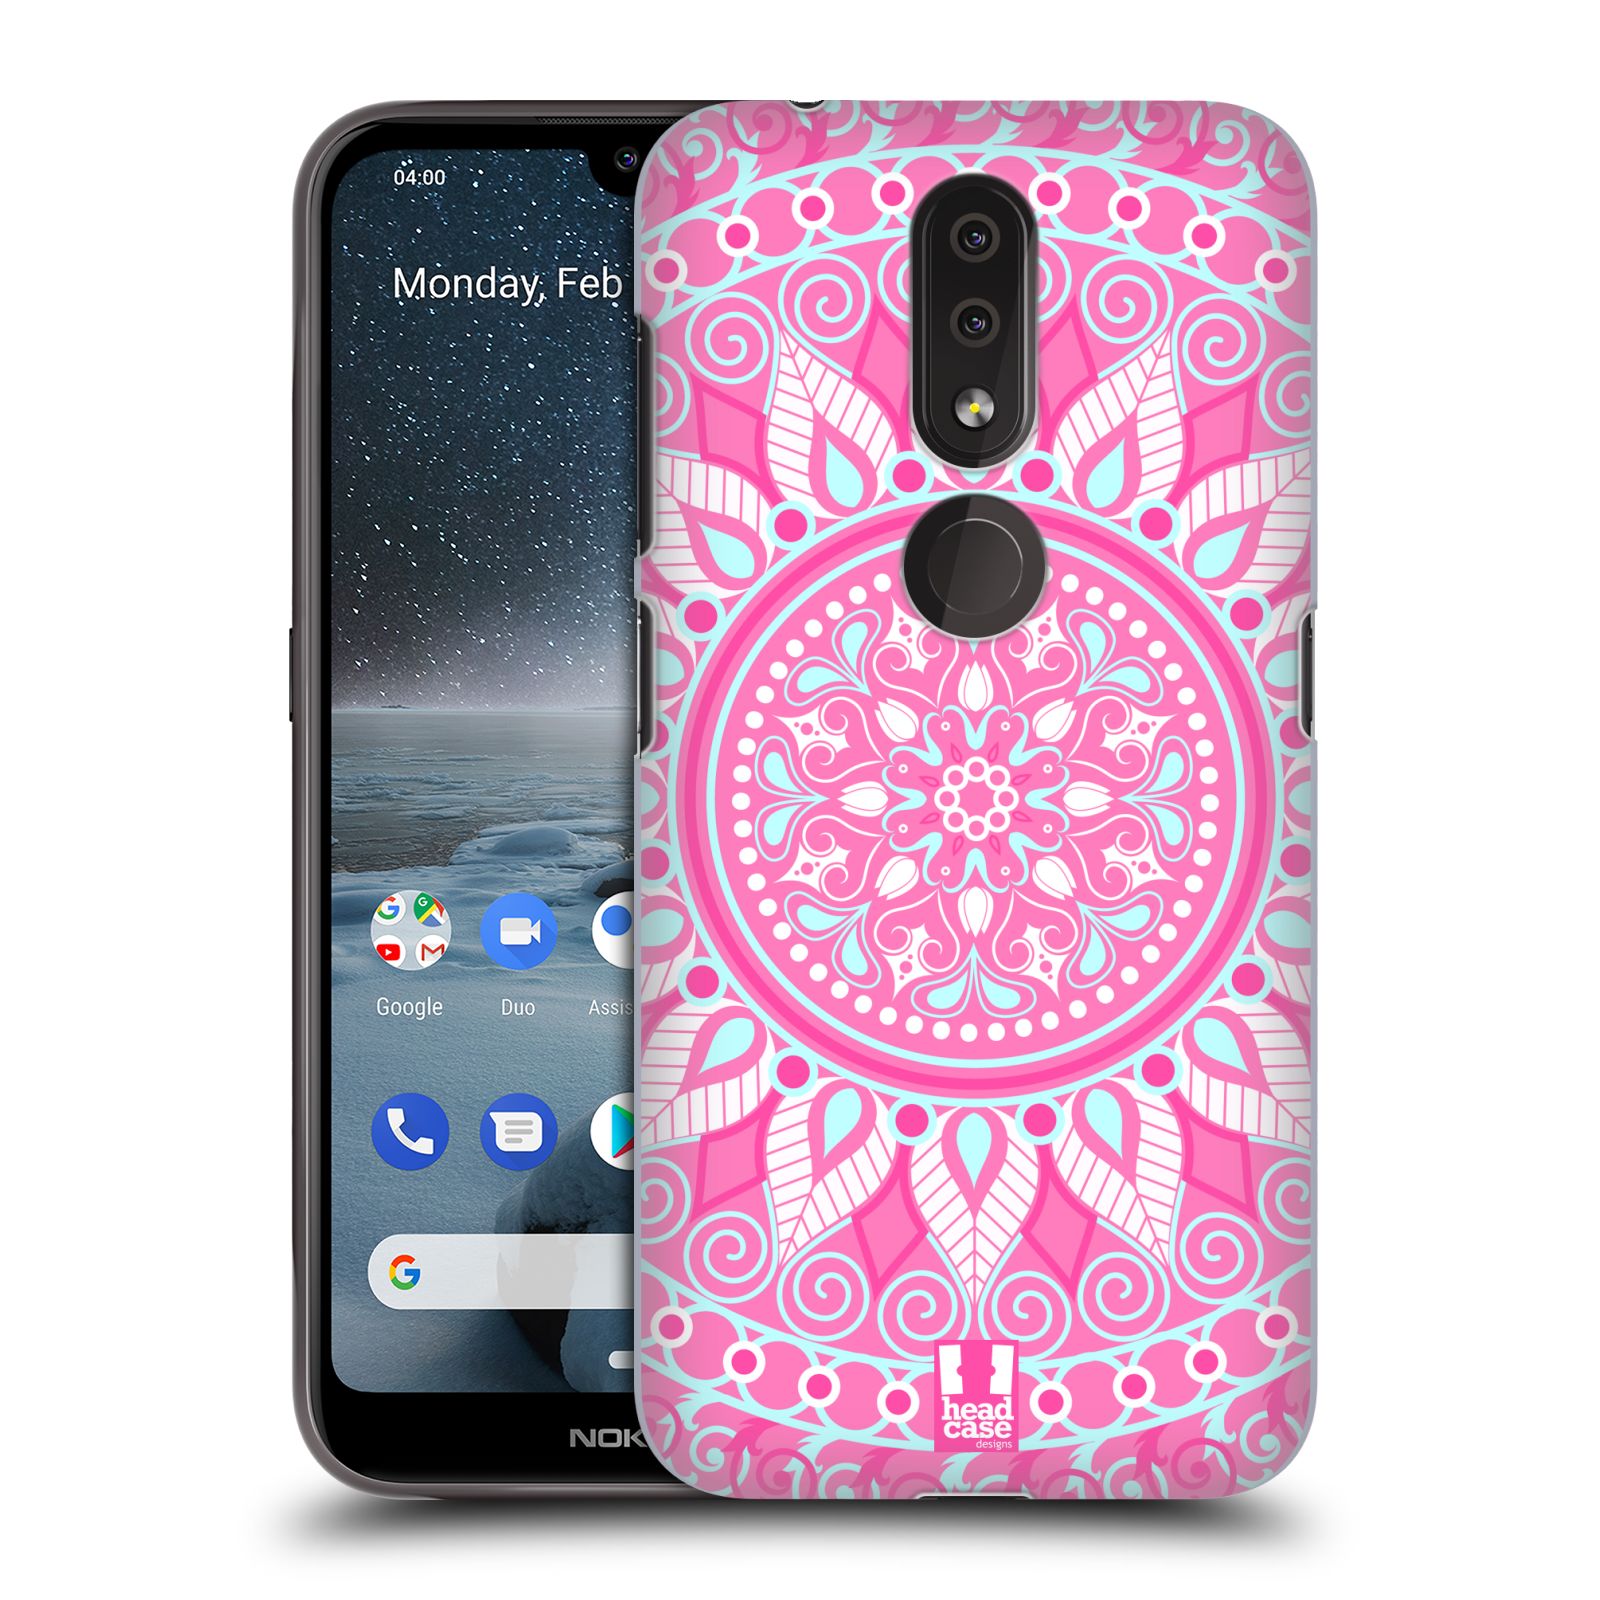 Pouzdro na mobil Nokia 4.2 - HEAD CASE - vzor Indie Mandala slunce barevný motiv RŮŽOVÁ